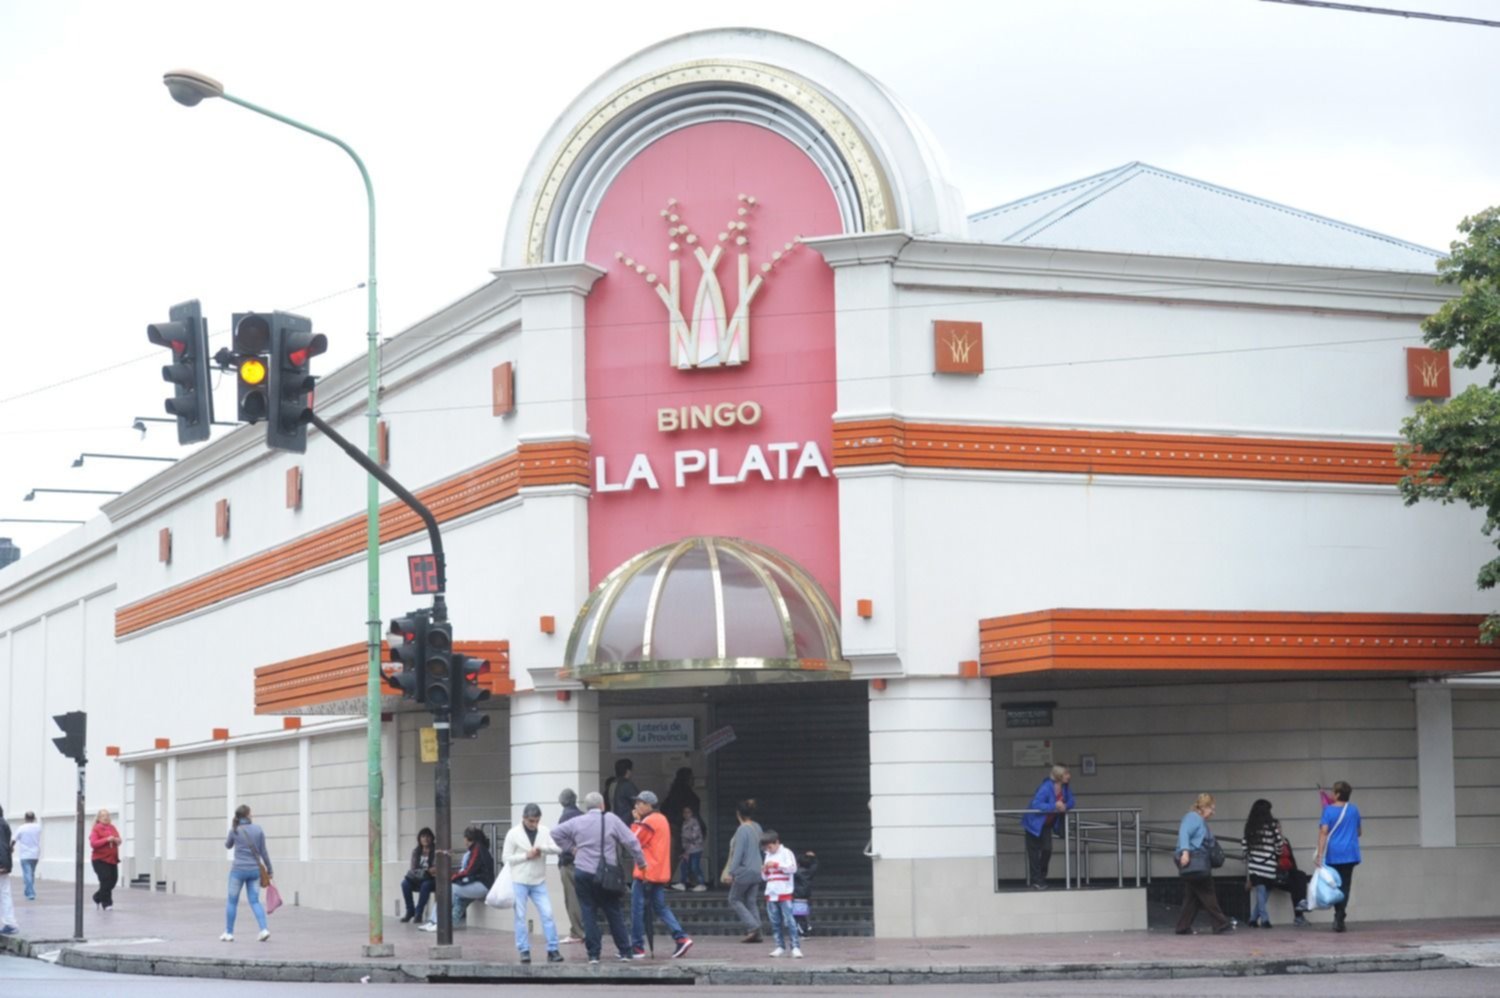 Incidentes con dos "trapitos" en la puerta del Bingo de La Plata